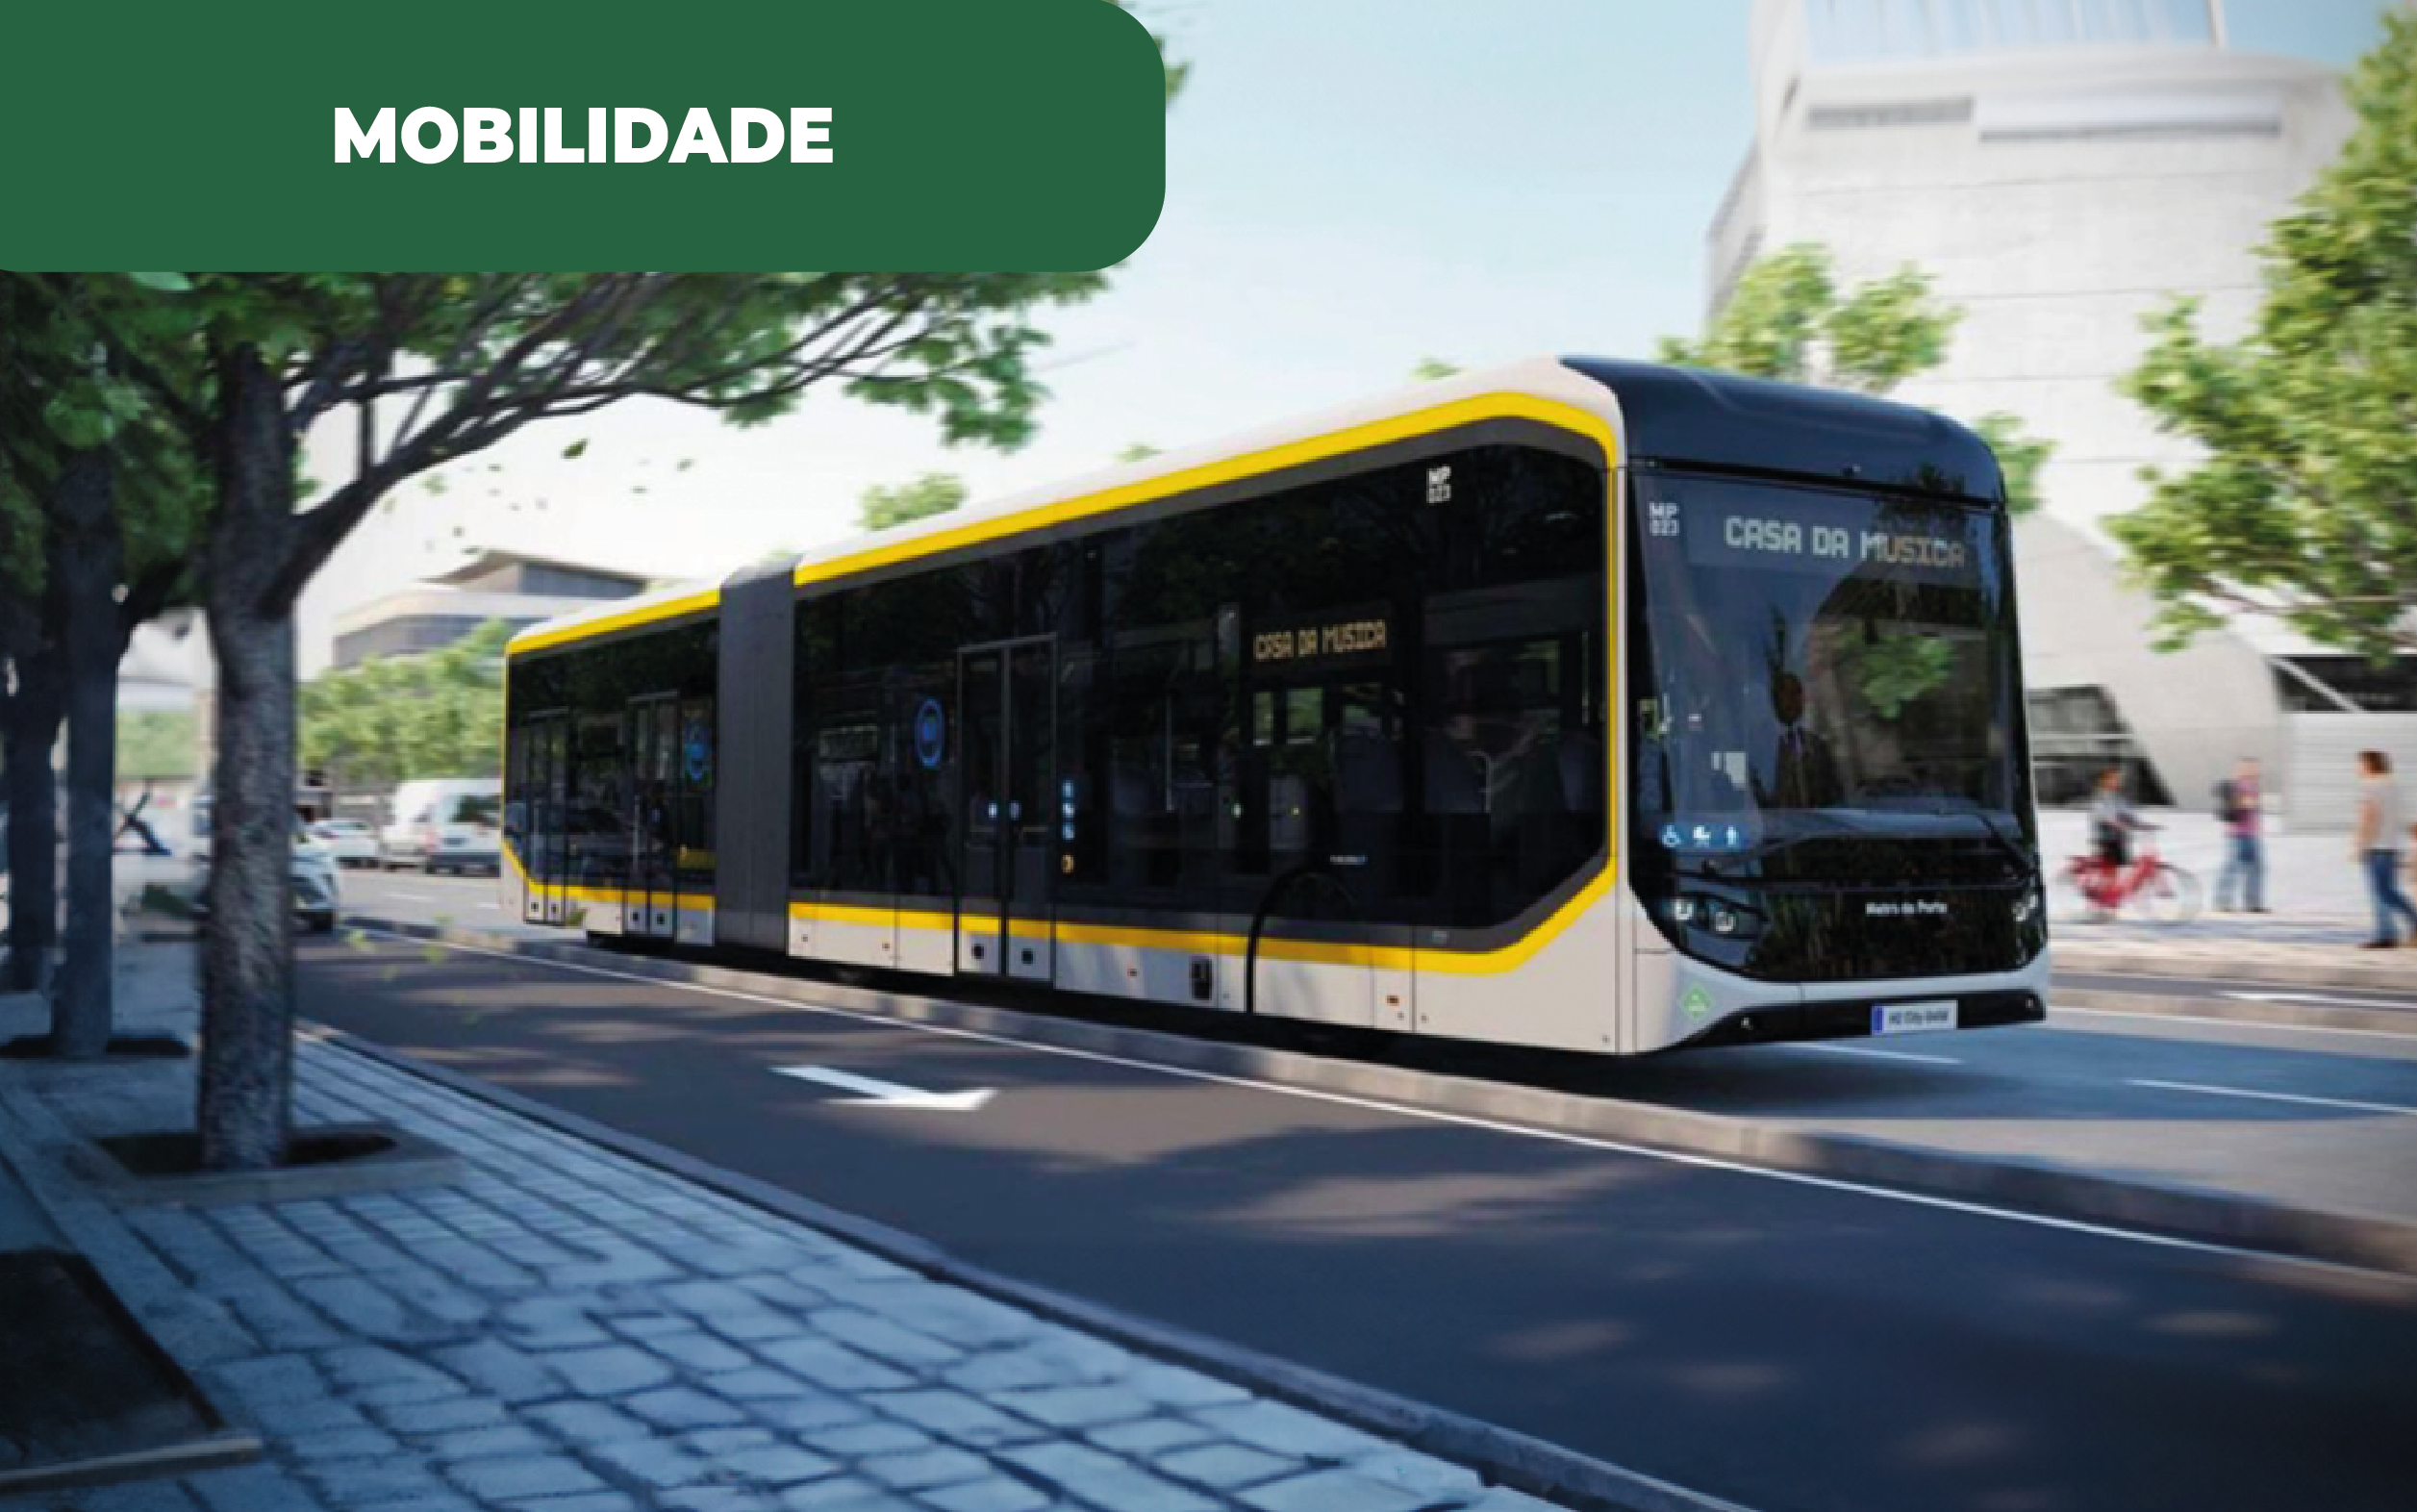 Imagem ilustrativa do futuro autocarro da Metrobus (BRT), que circulará pelo Porto, através da produção de hidrogénio na STCP.